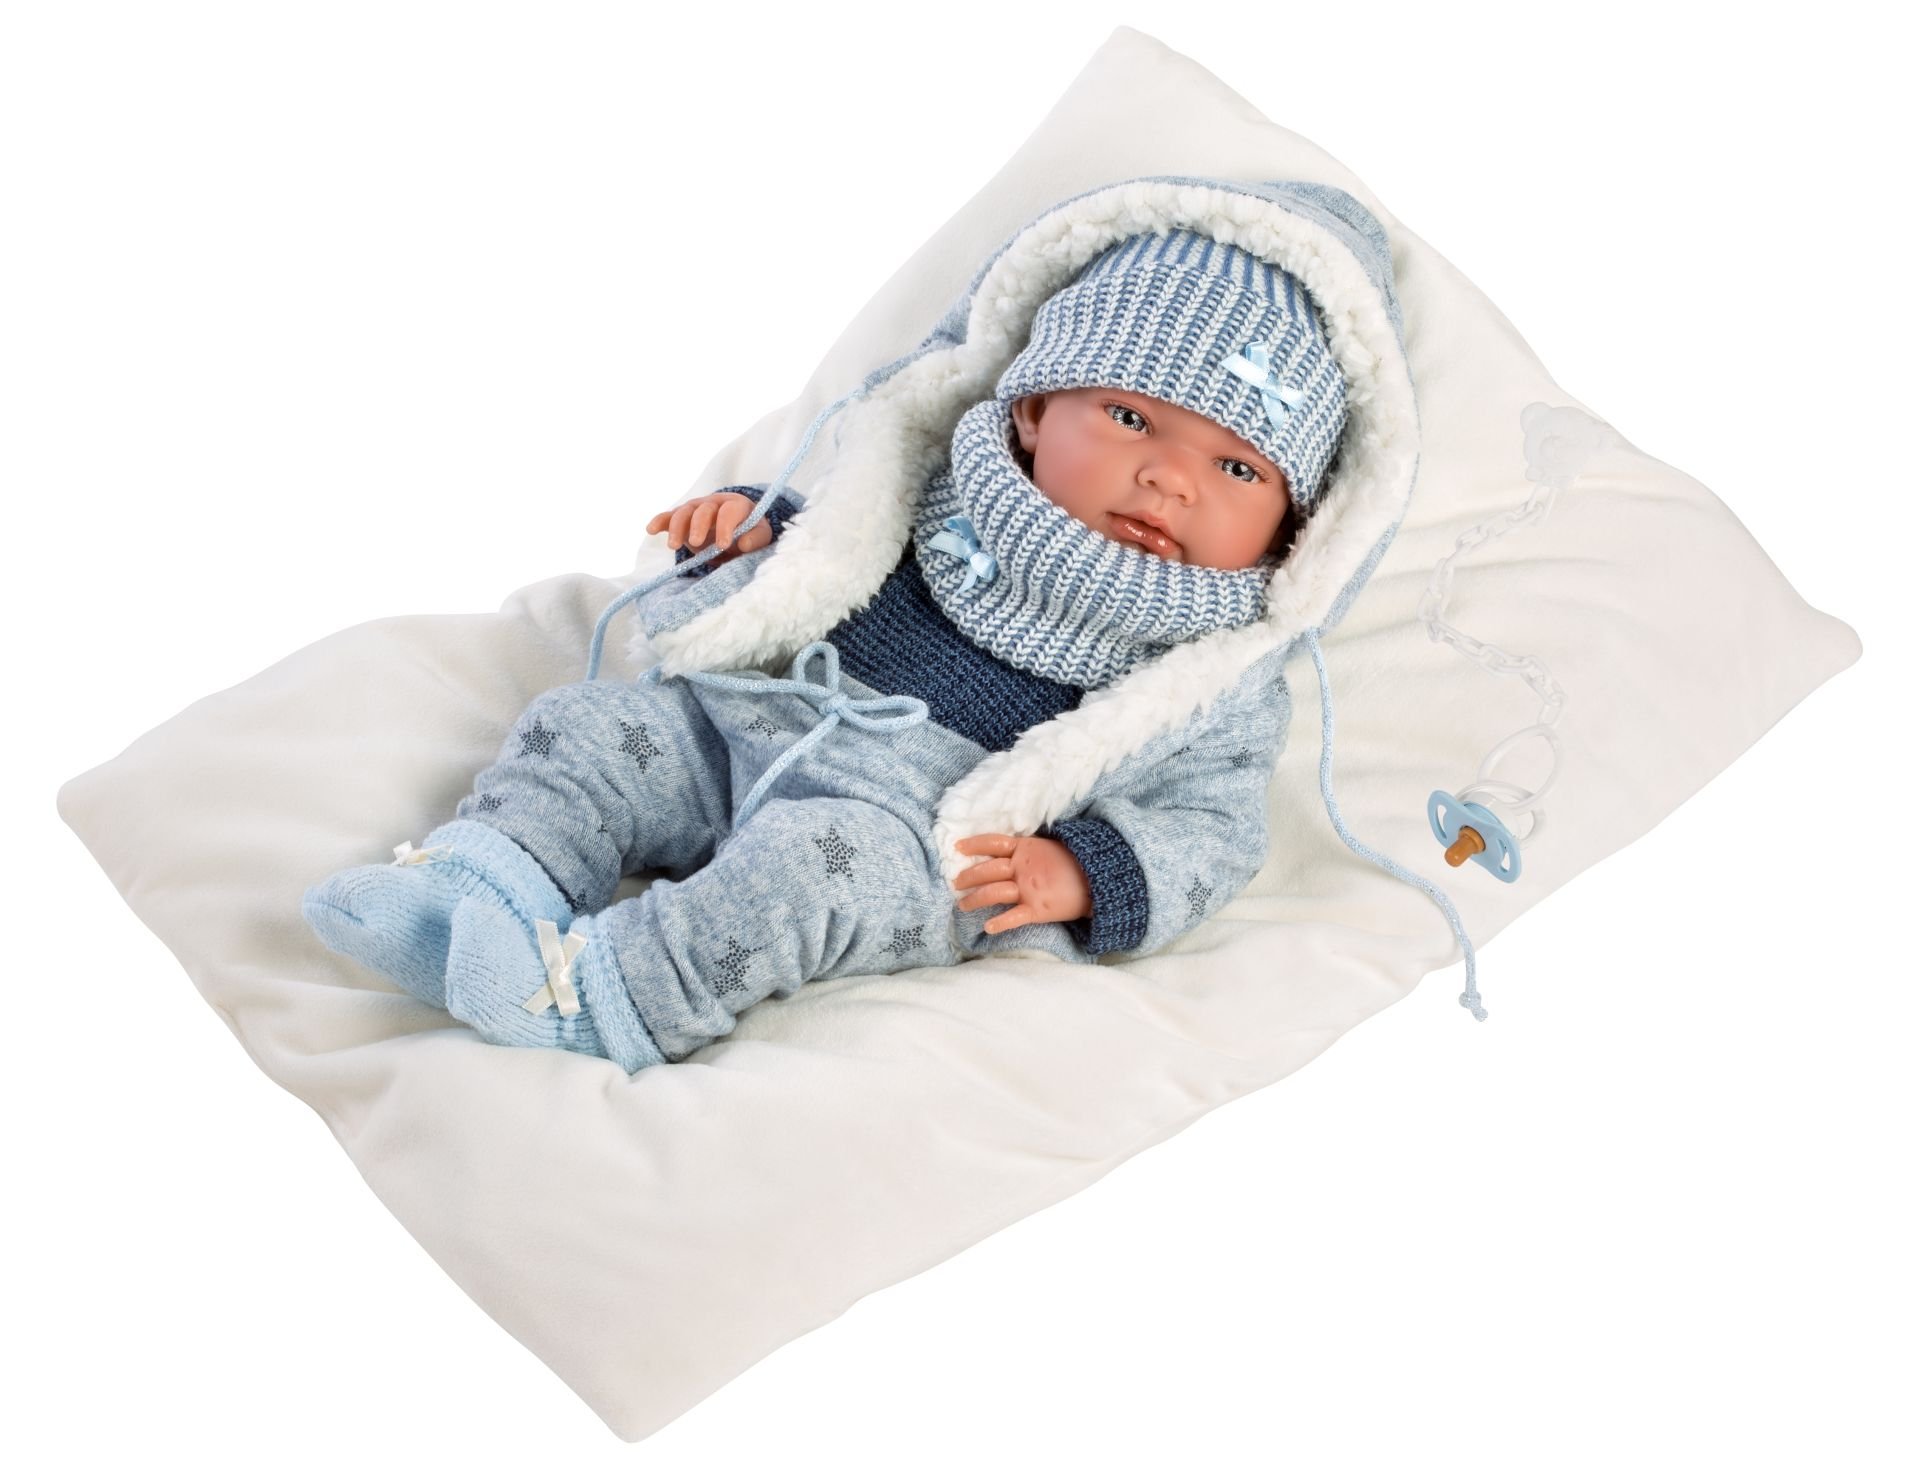 Levně Llorens 73881 NEW BORN CHLAPEČEK - realistická panenka miminko s celovinylovým tělem - 40 cm